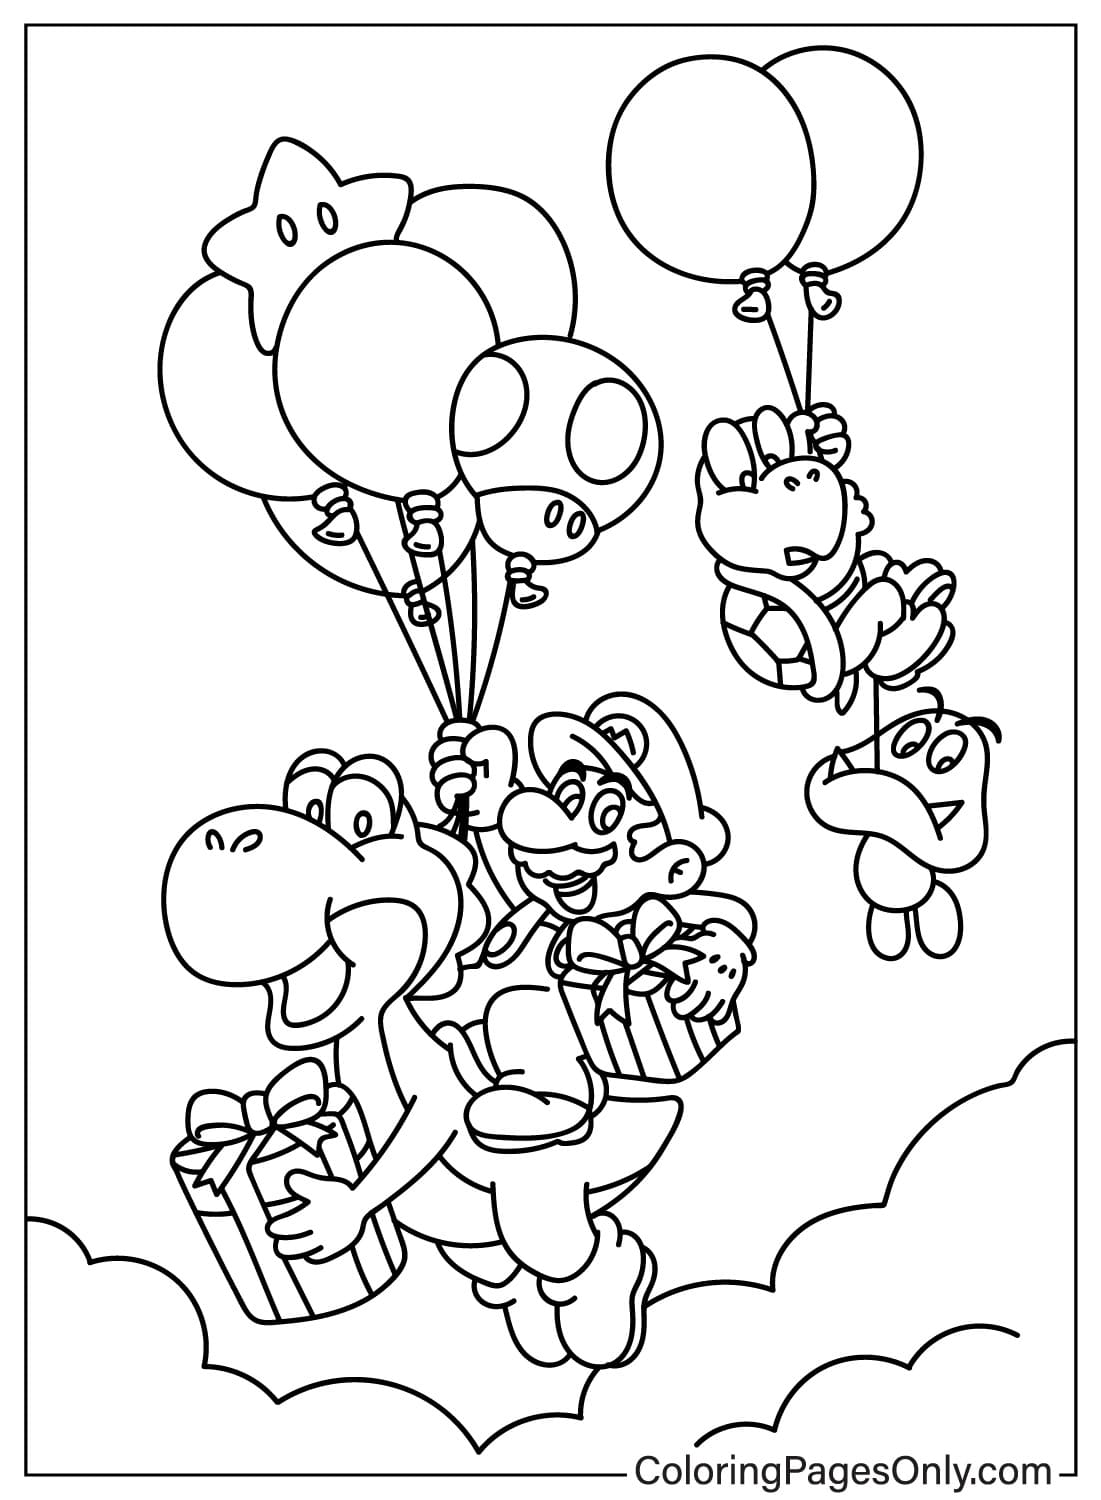 Pagina da colorare di Mario, Yoshi, Koopa Troopa e Goomba